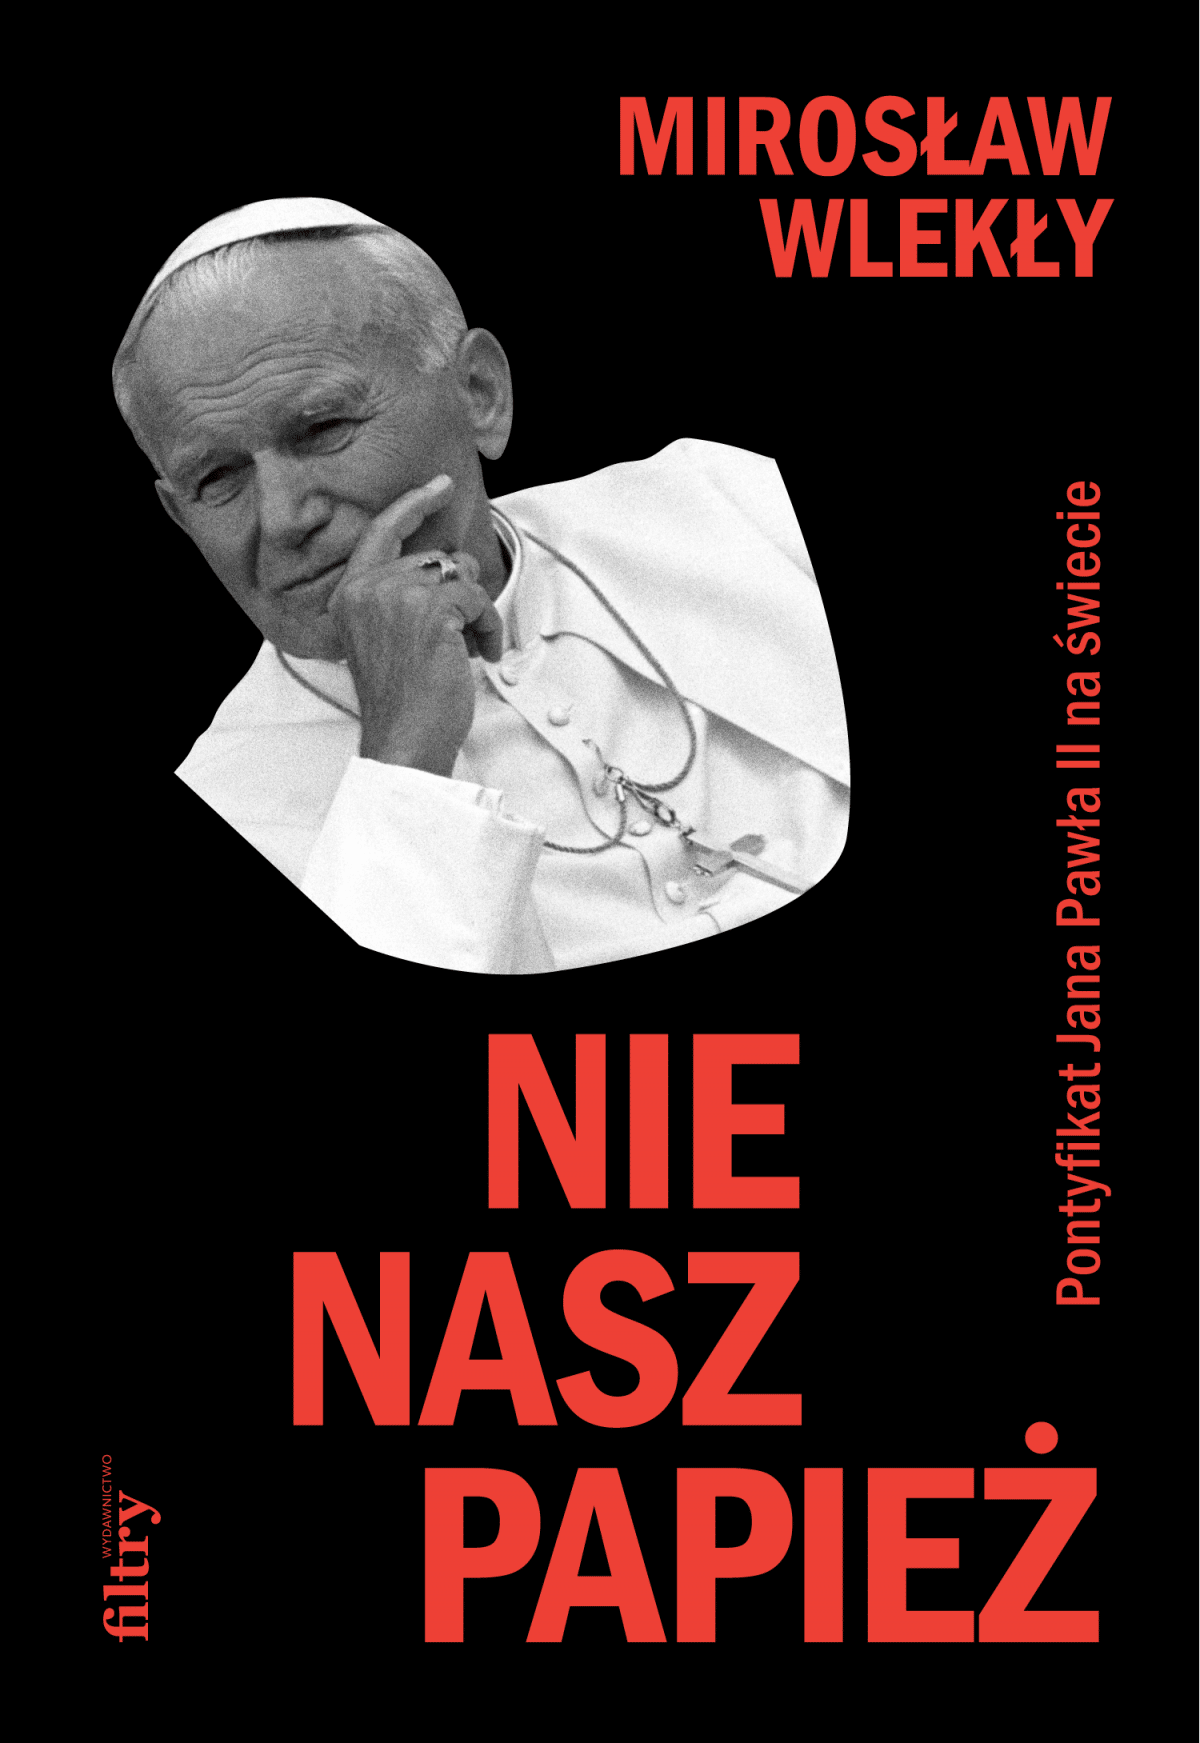 okładka książki „Nie nasz papież" z popiersiem JPII na czarnym tle i czerwonymi literami tytułu